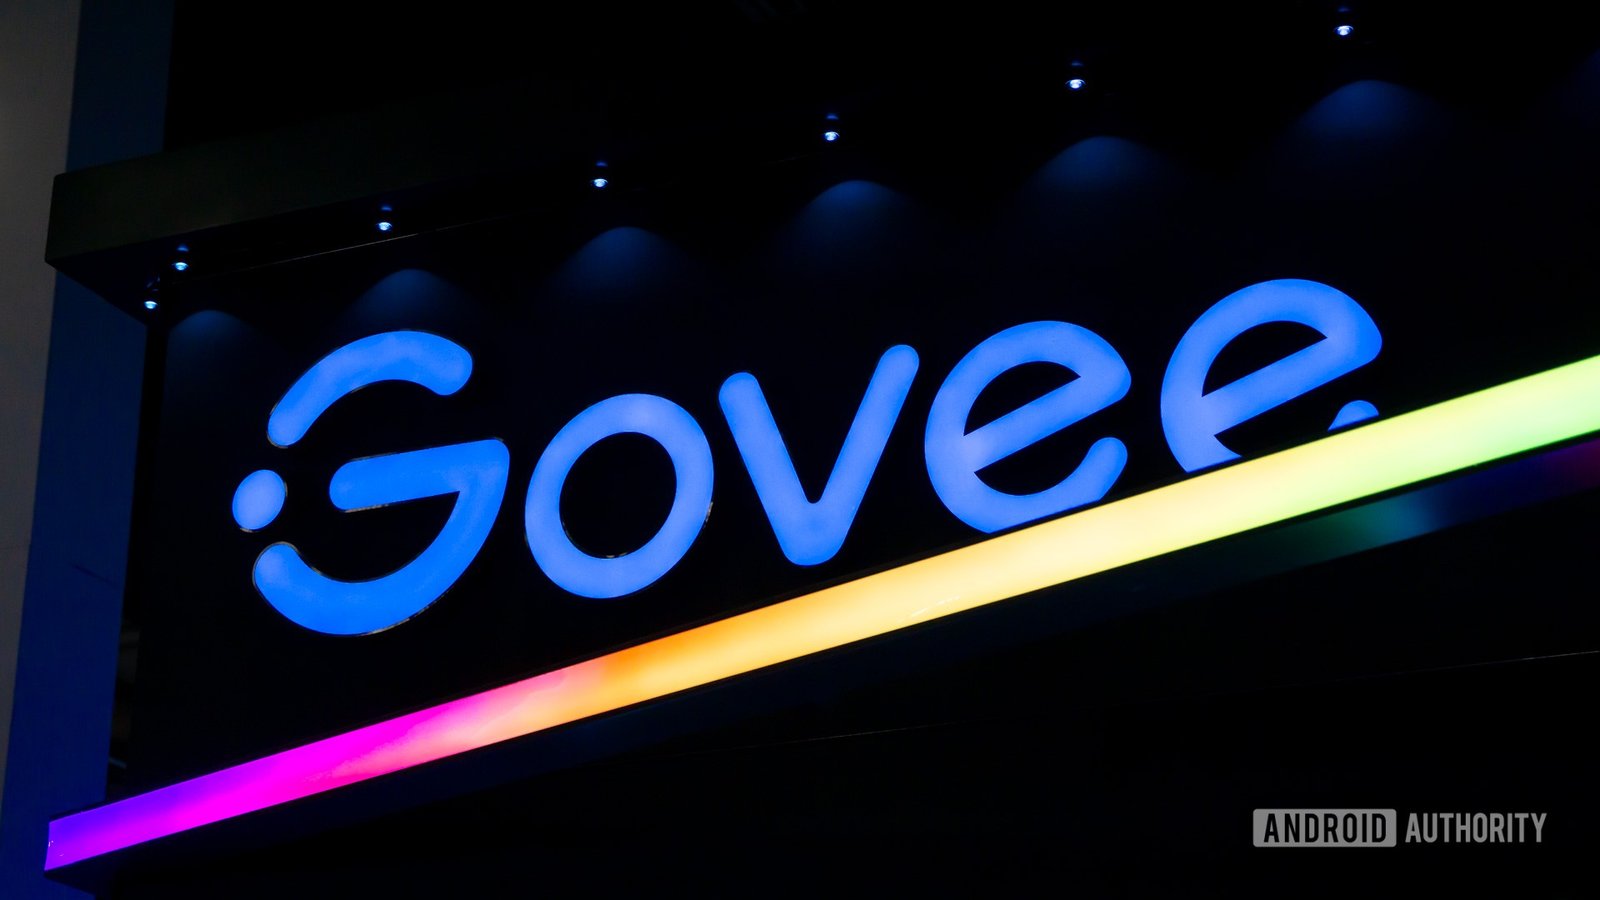 Govee’s new floor lamps get smarter with Matter support, built-in speakers